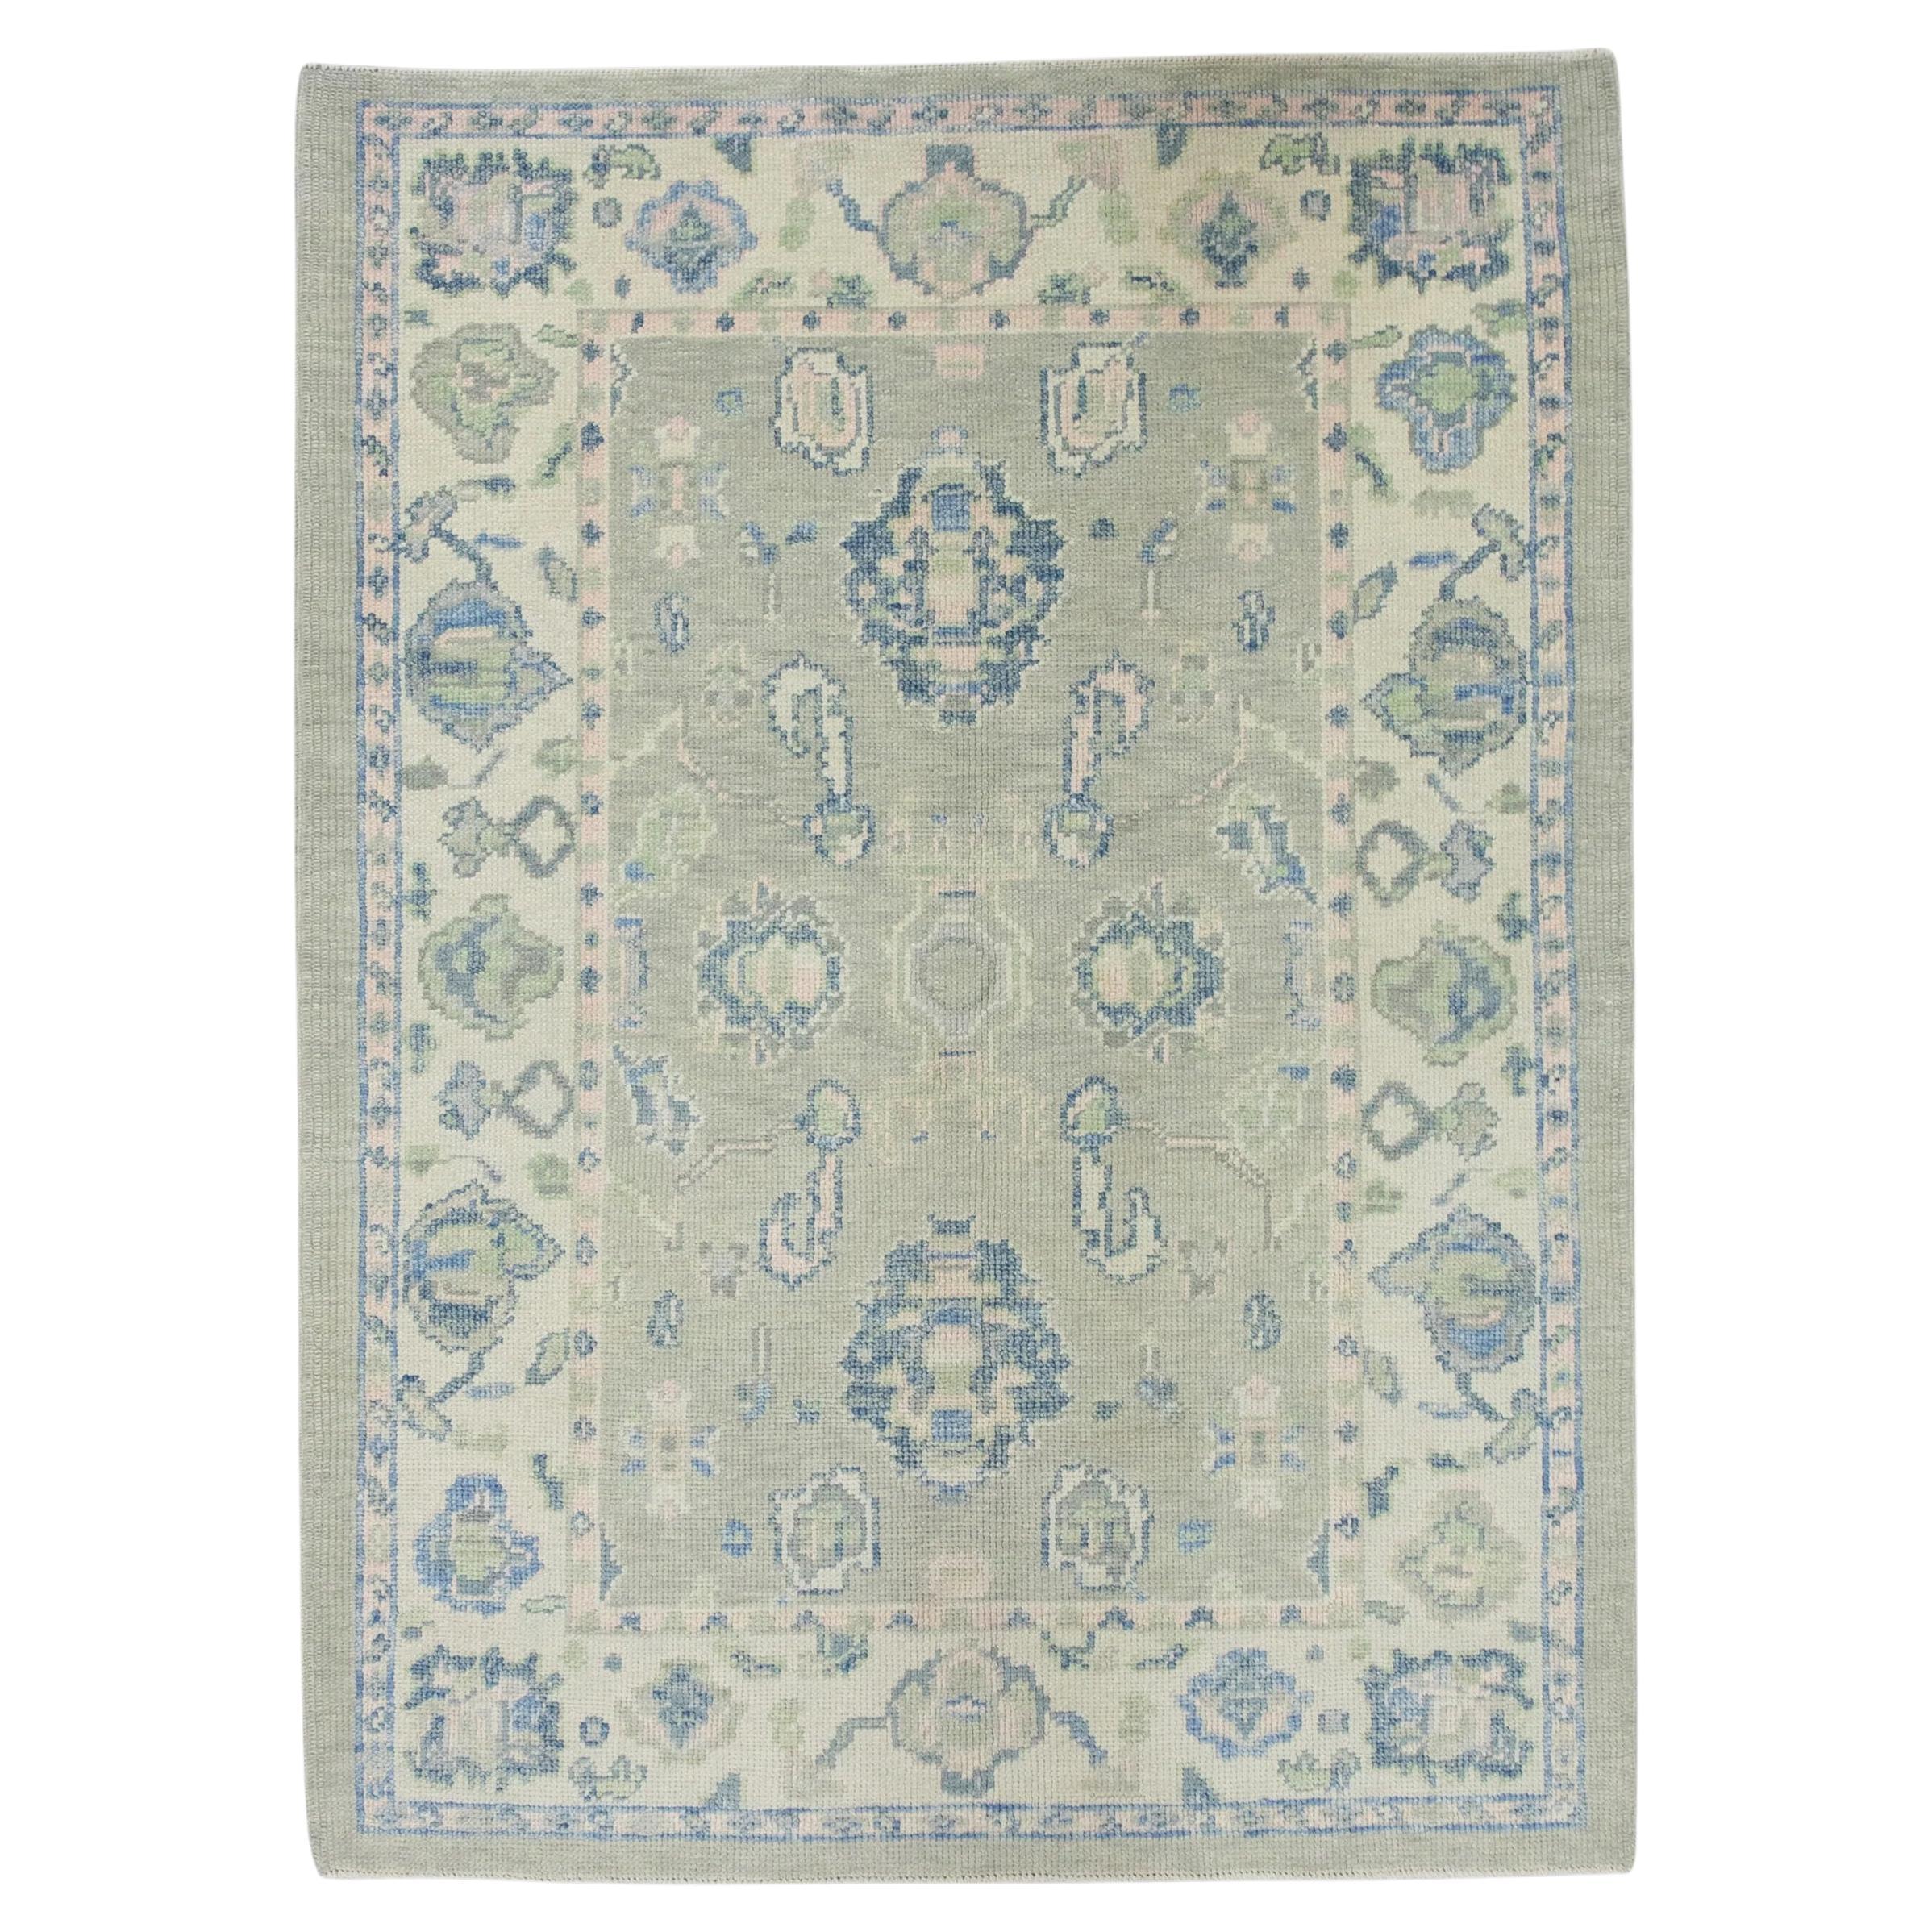 Grüner und blauer handgewebter türkischer Oushak-Teppich aus Wolle mit Blumenmuster 4' x 5'5"